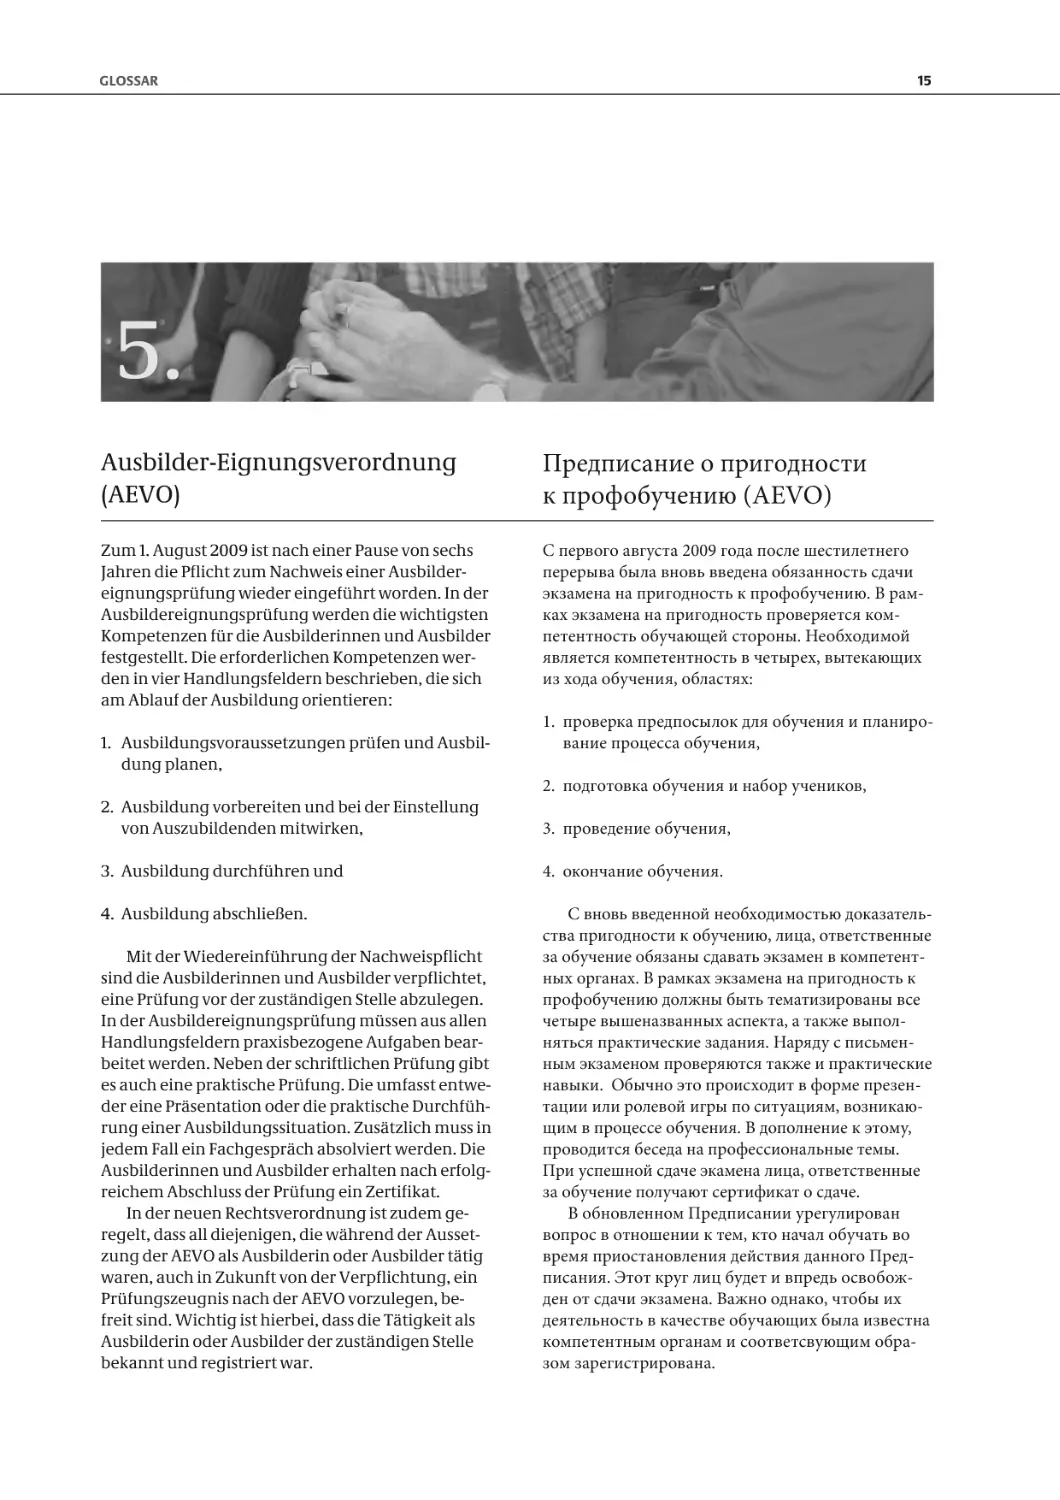 5. Ausbilder-Eignungsverordnung (AEVO) / Предписание о пригодности к профобучению